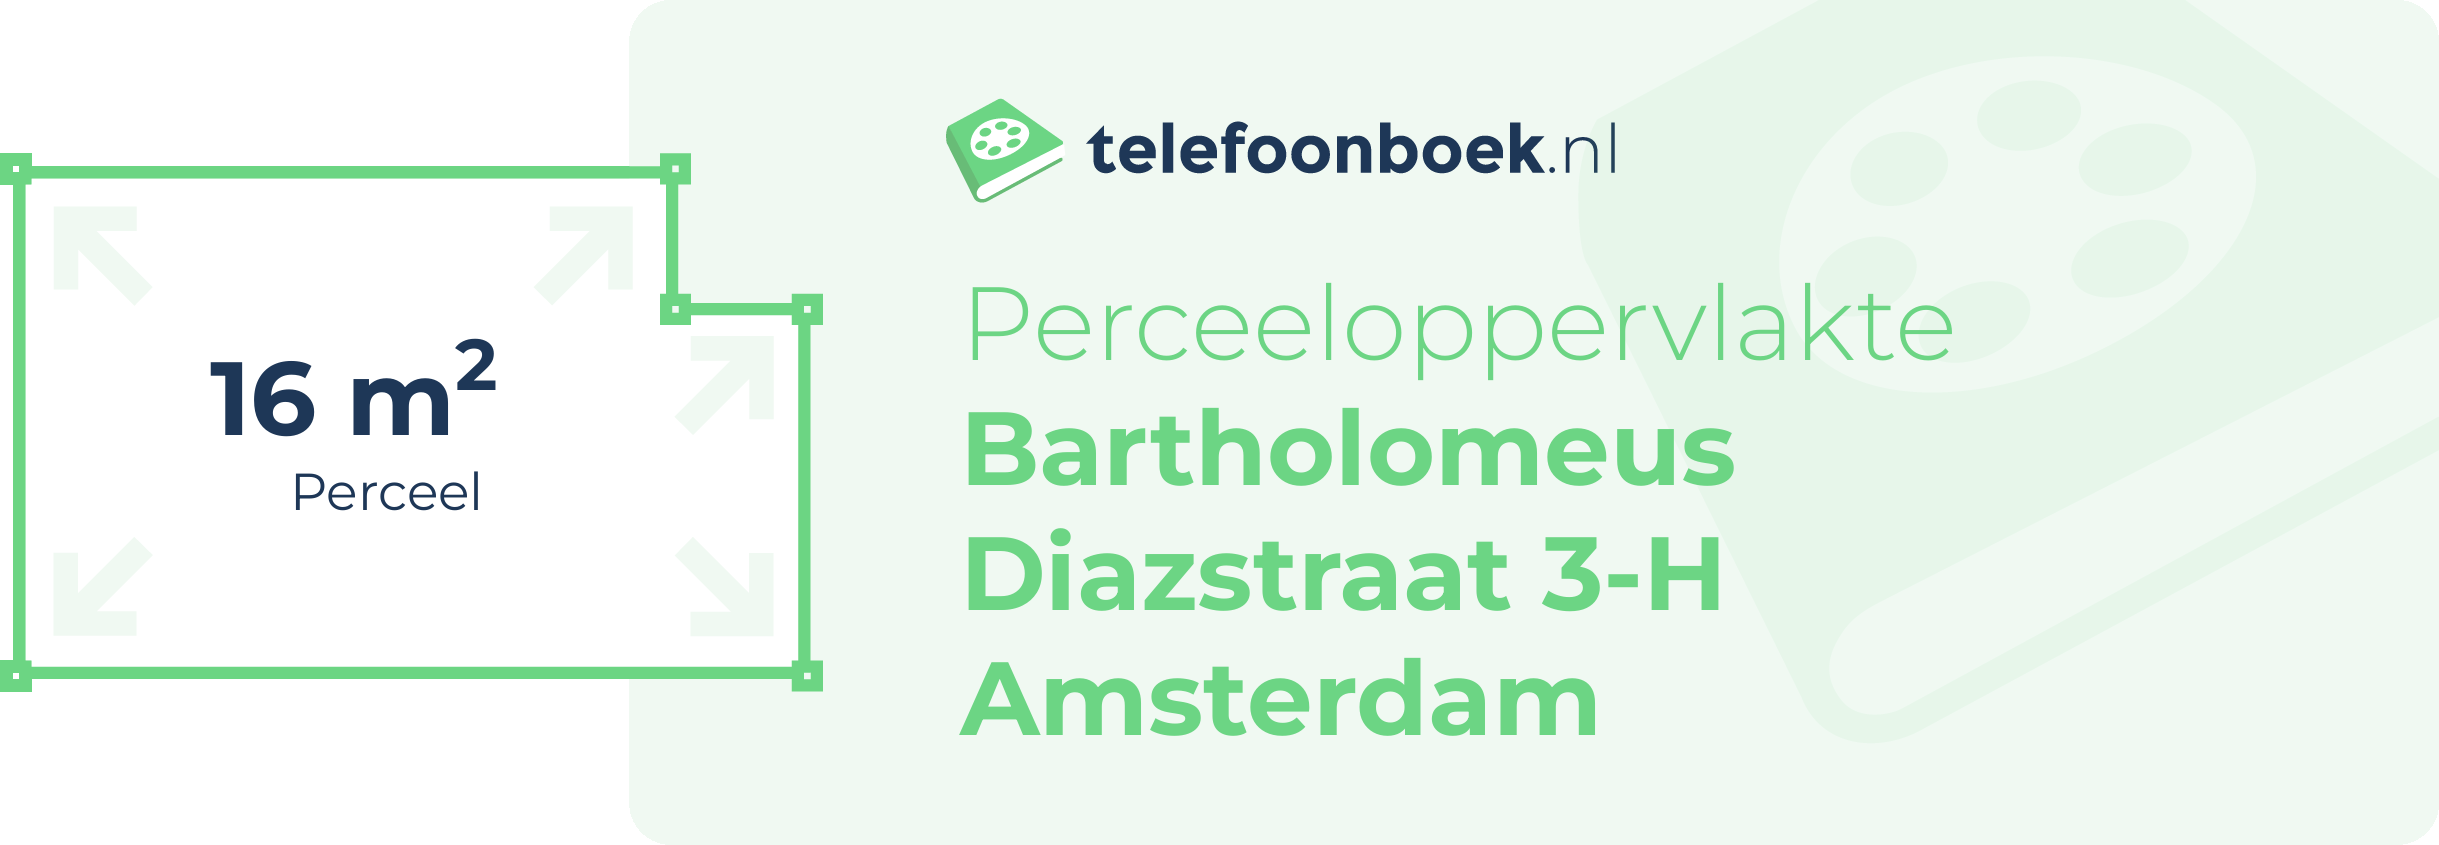 Perceeloppervlakte Bartholomeus Diazstraat 3-H Amsterdam